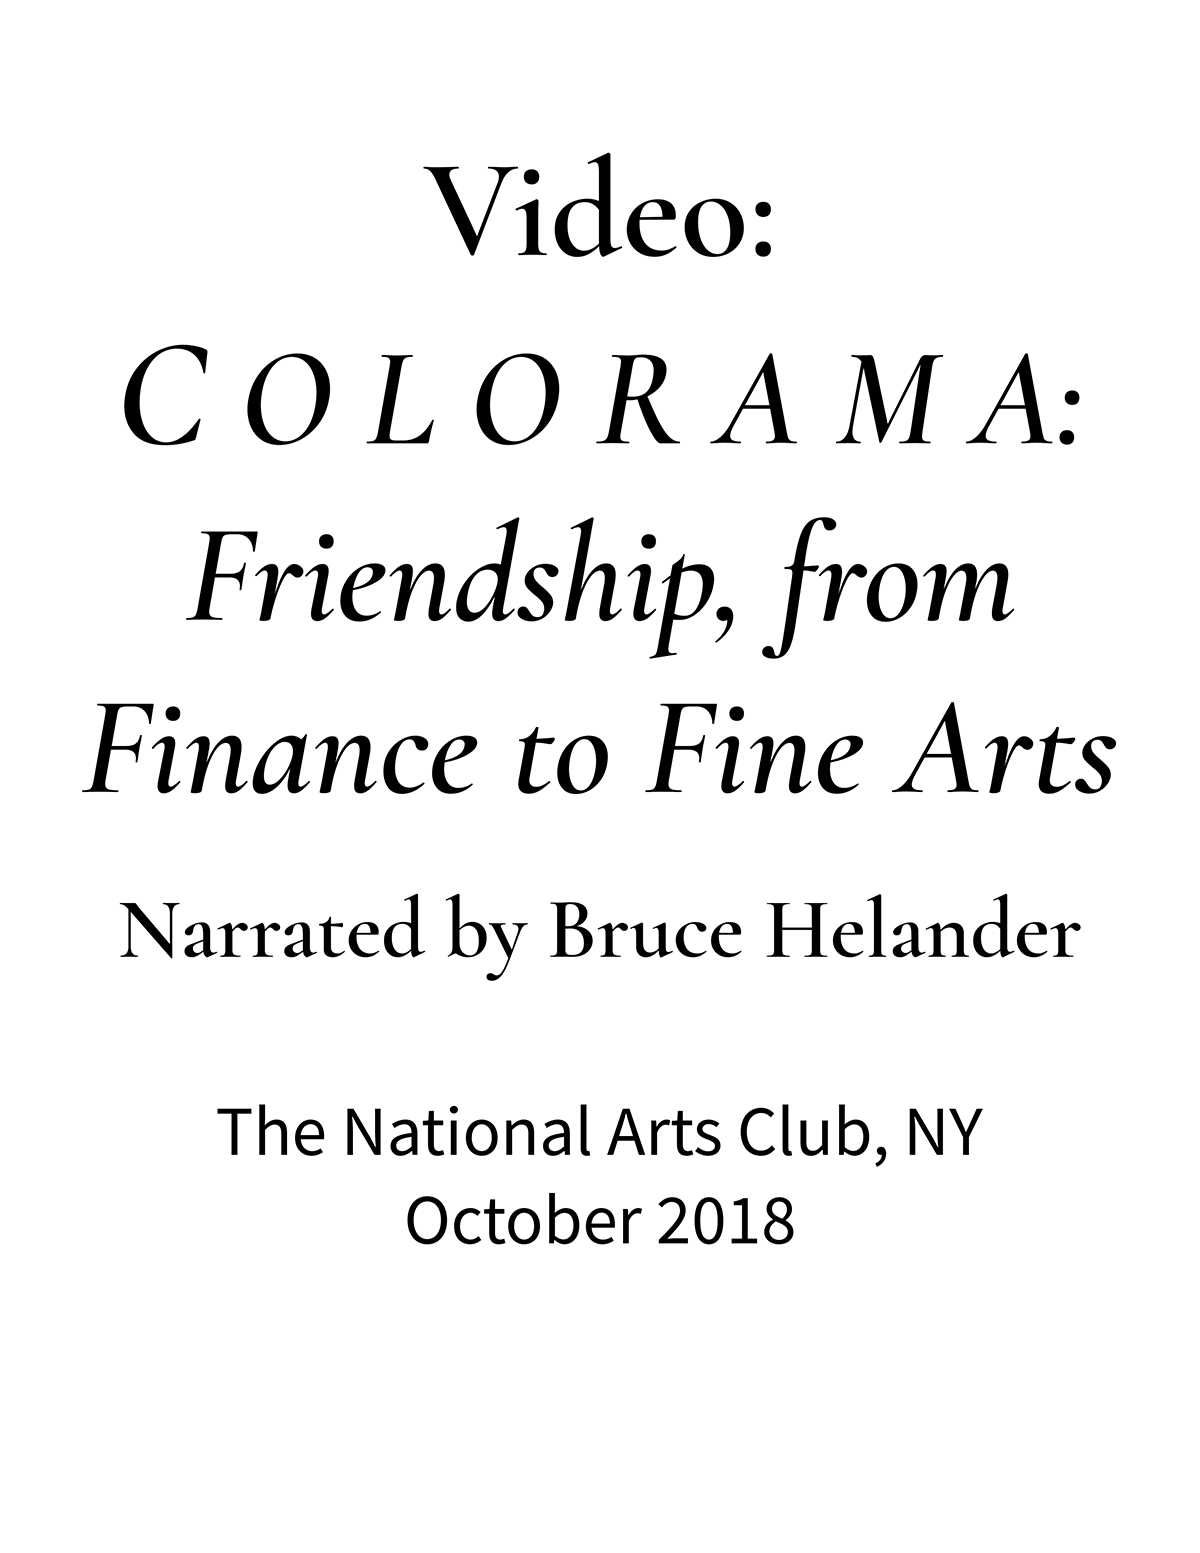 The National Arts Club | C O L O R A M A